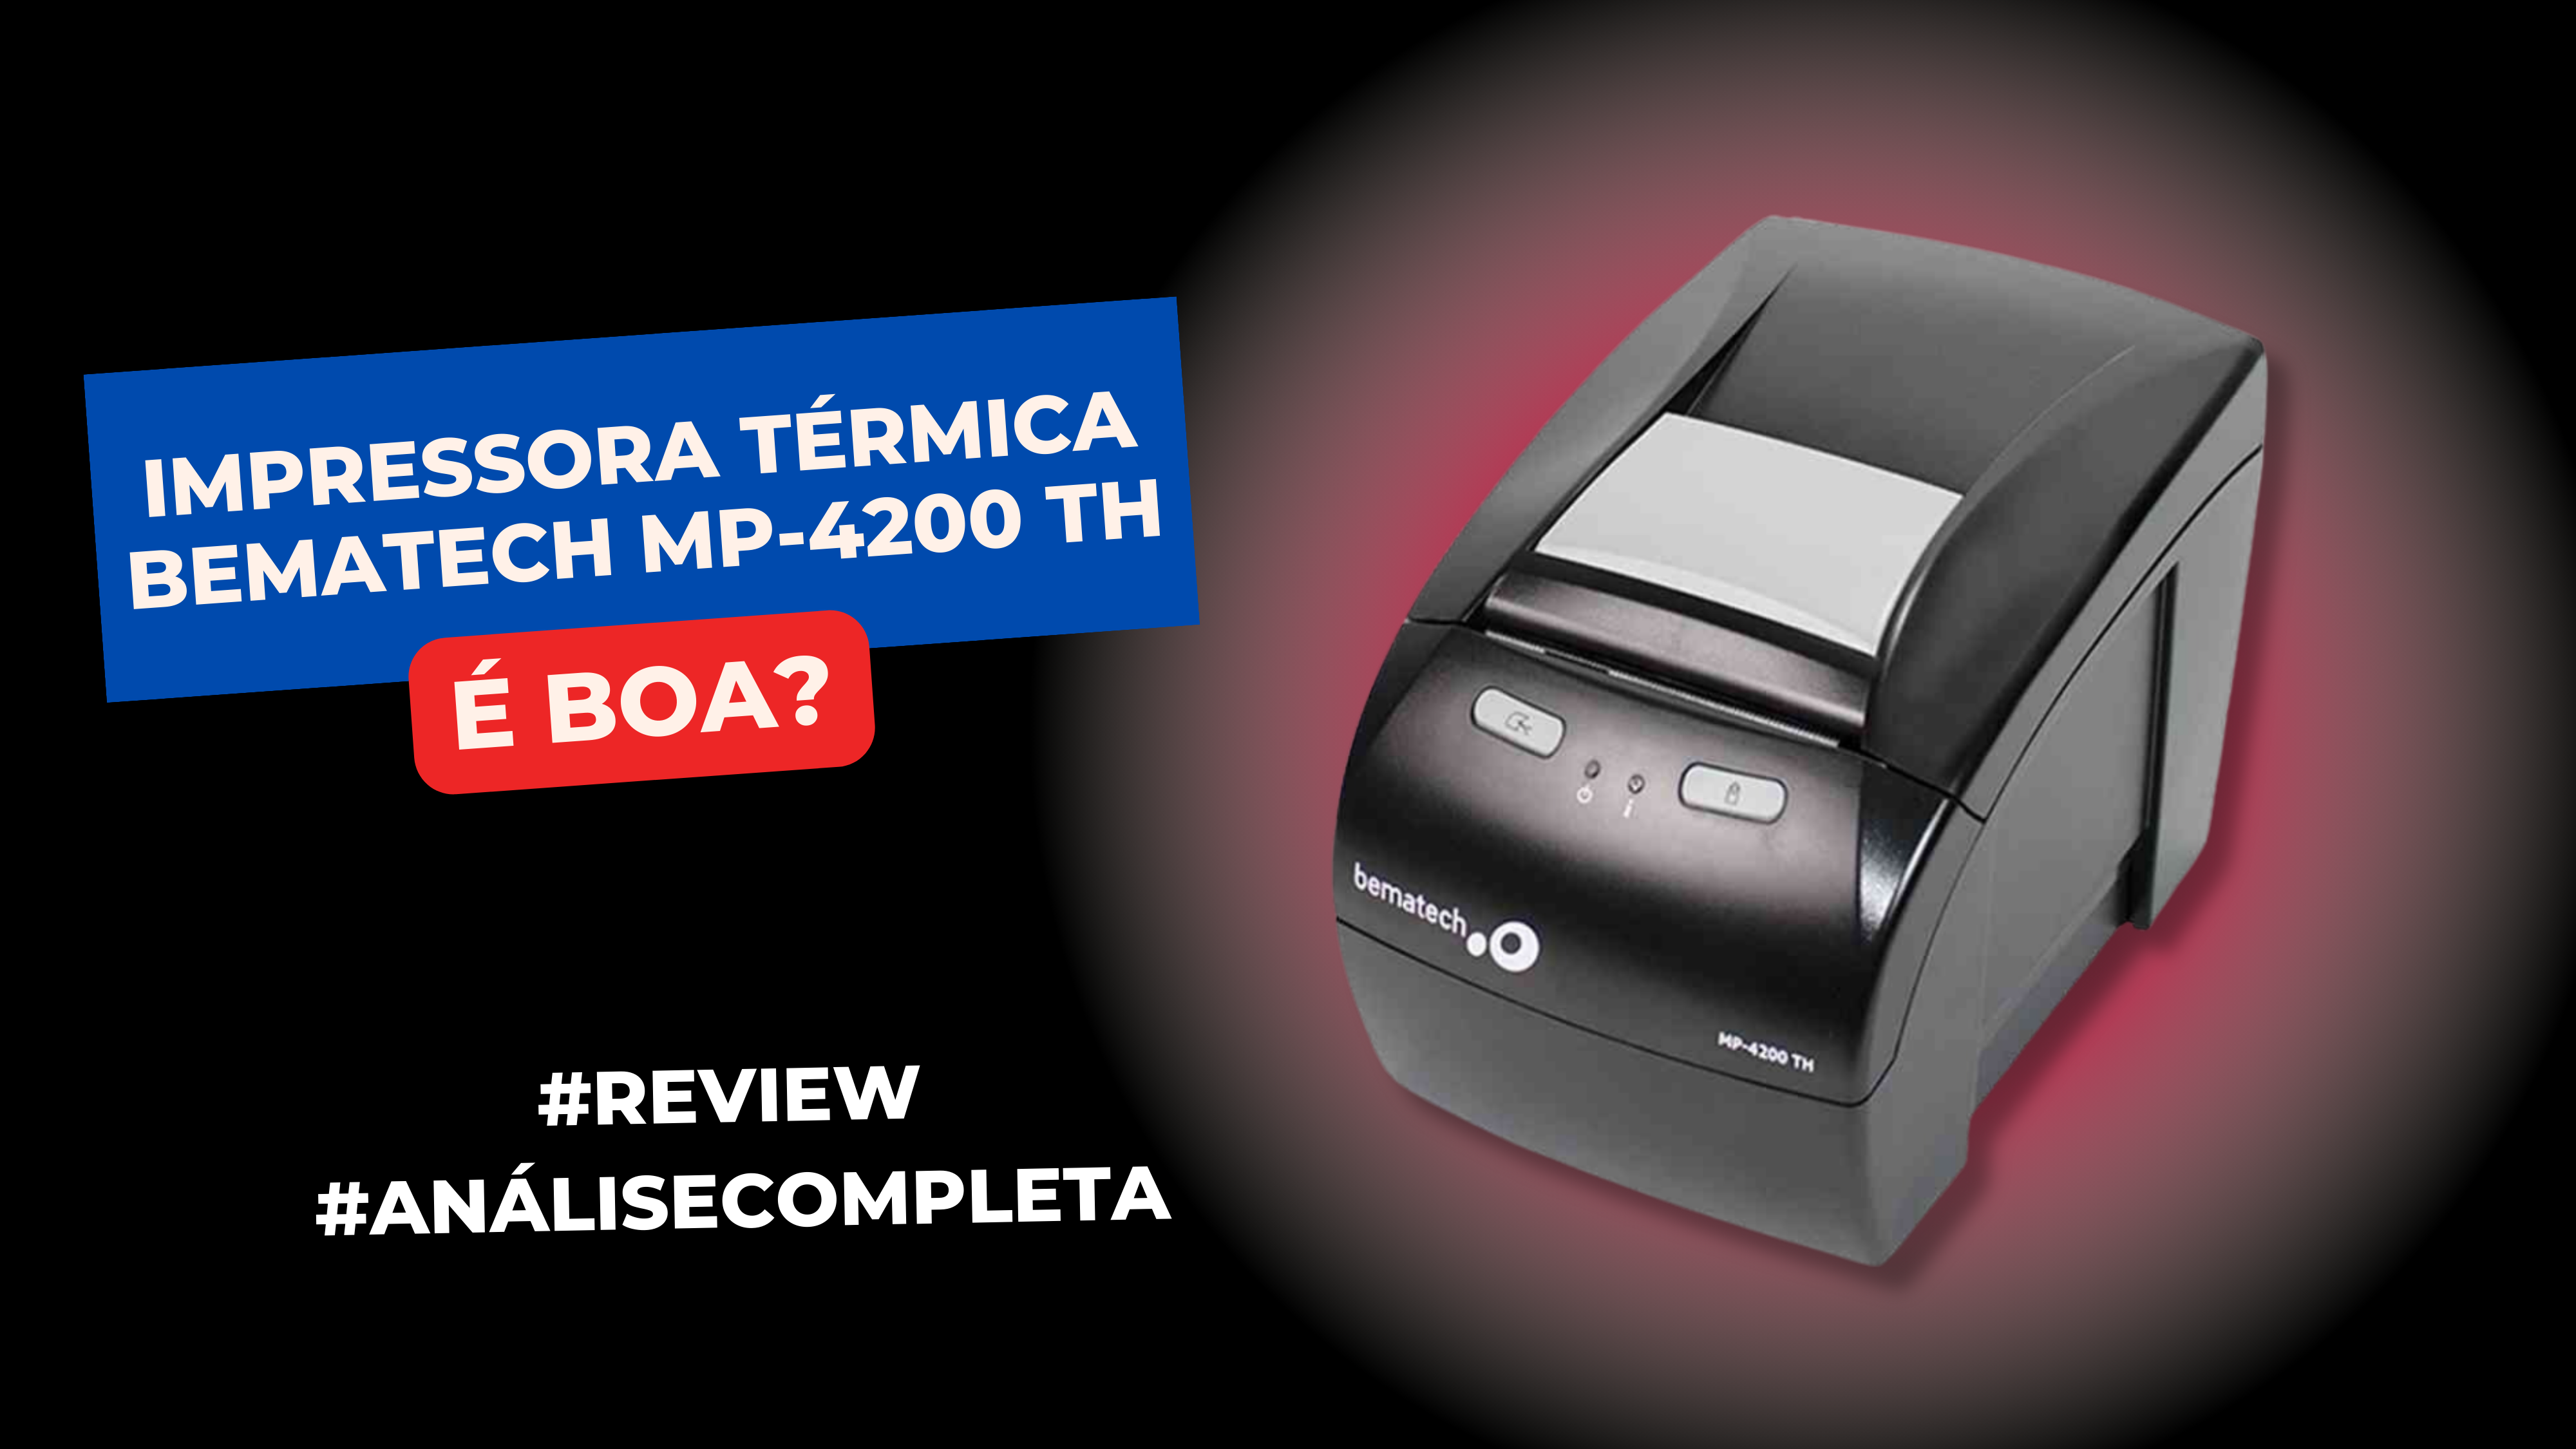 Impressora Térmica Bematech MP-4200 TH